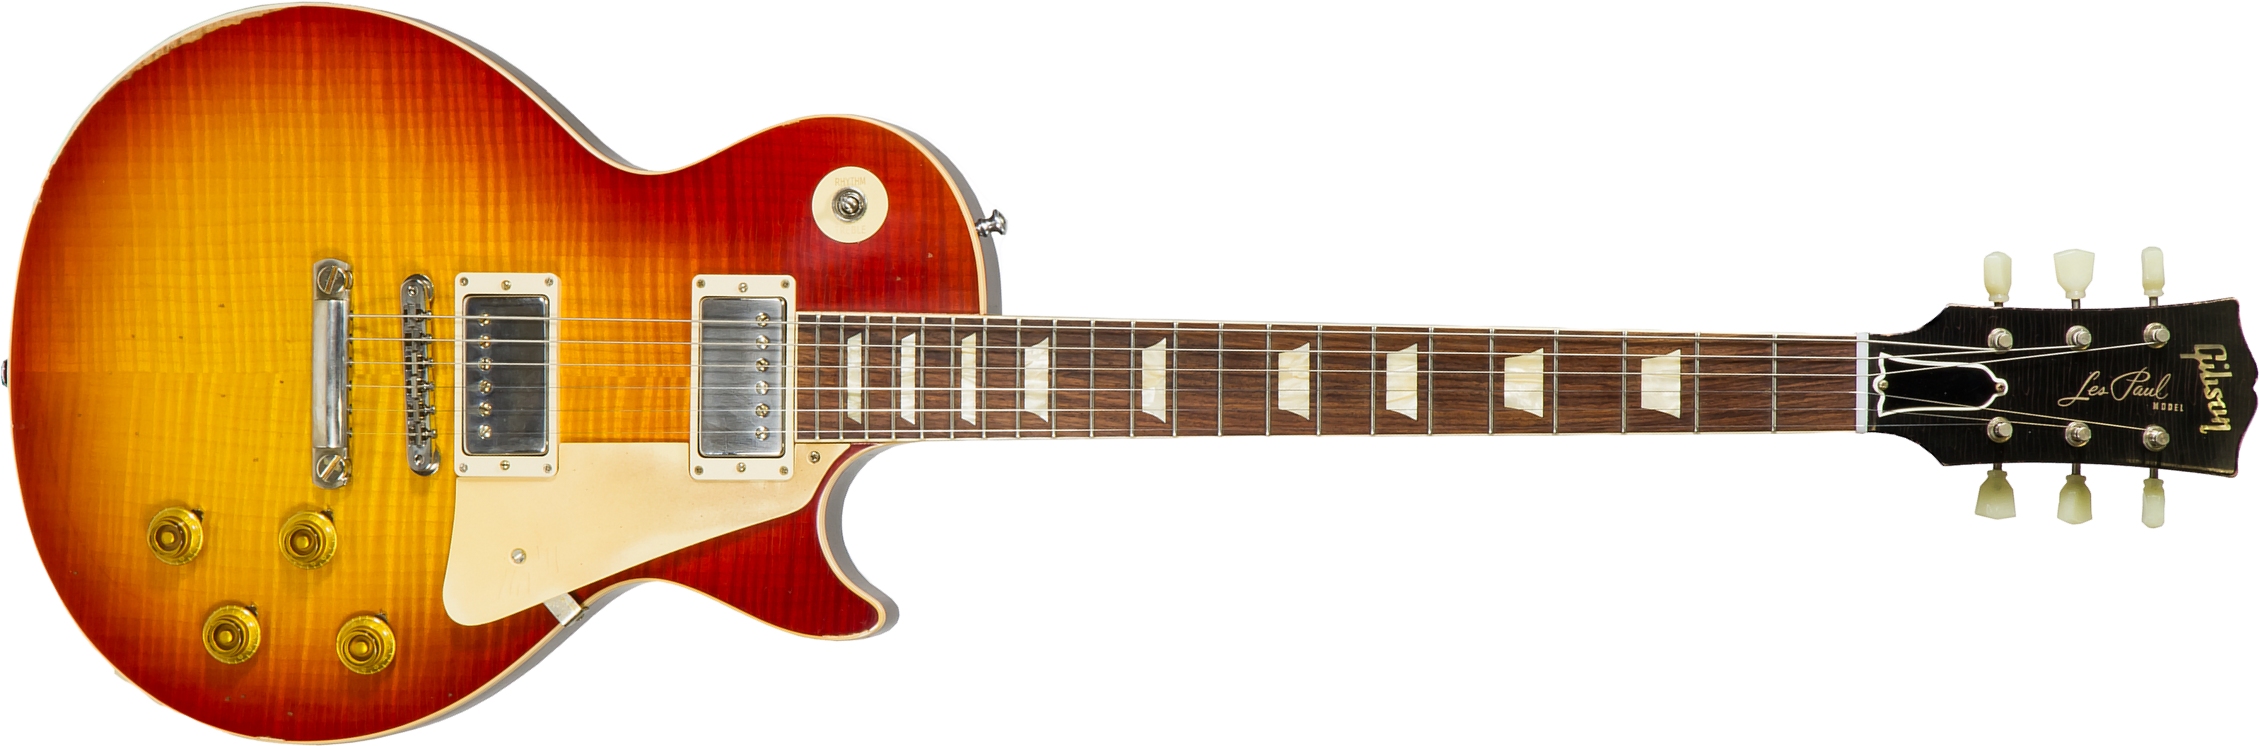 Gibson Custom Shop M2m Les Paul Standard 1958 Reissue 2019 2h Ht Rw #89849 - Heavy Aged First Burst - Guitare Électrique Single Cut - Main picture